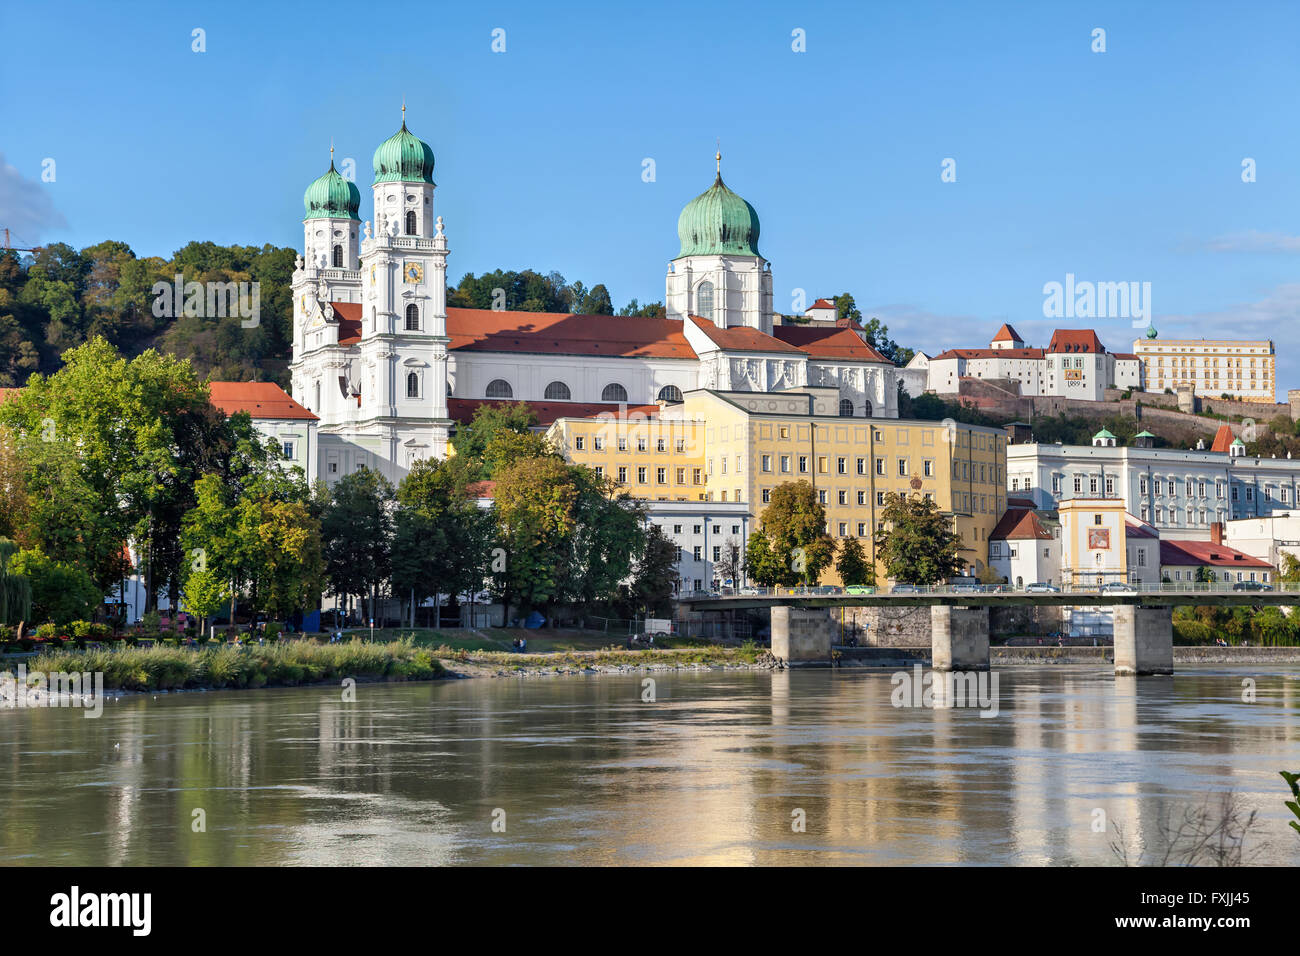 Marienbrucke Brücke und Dom in Passau, Bayern, Deutschland Stockfoto